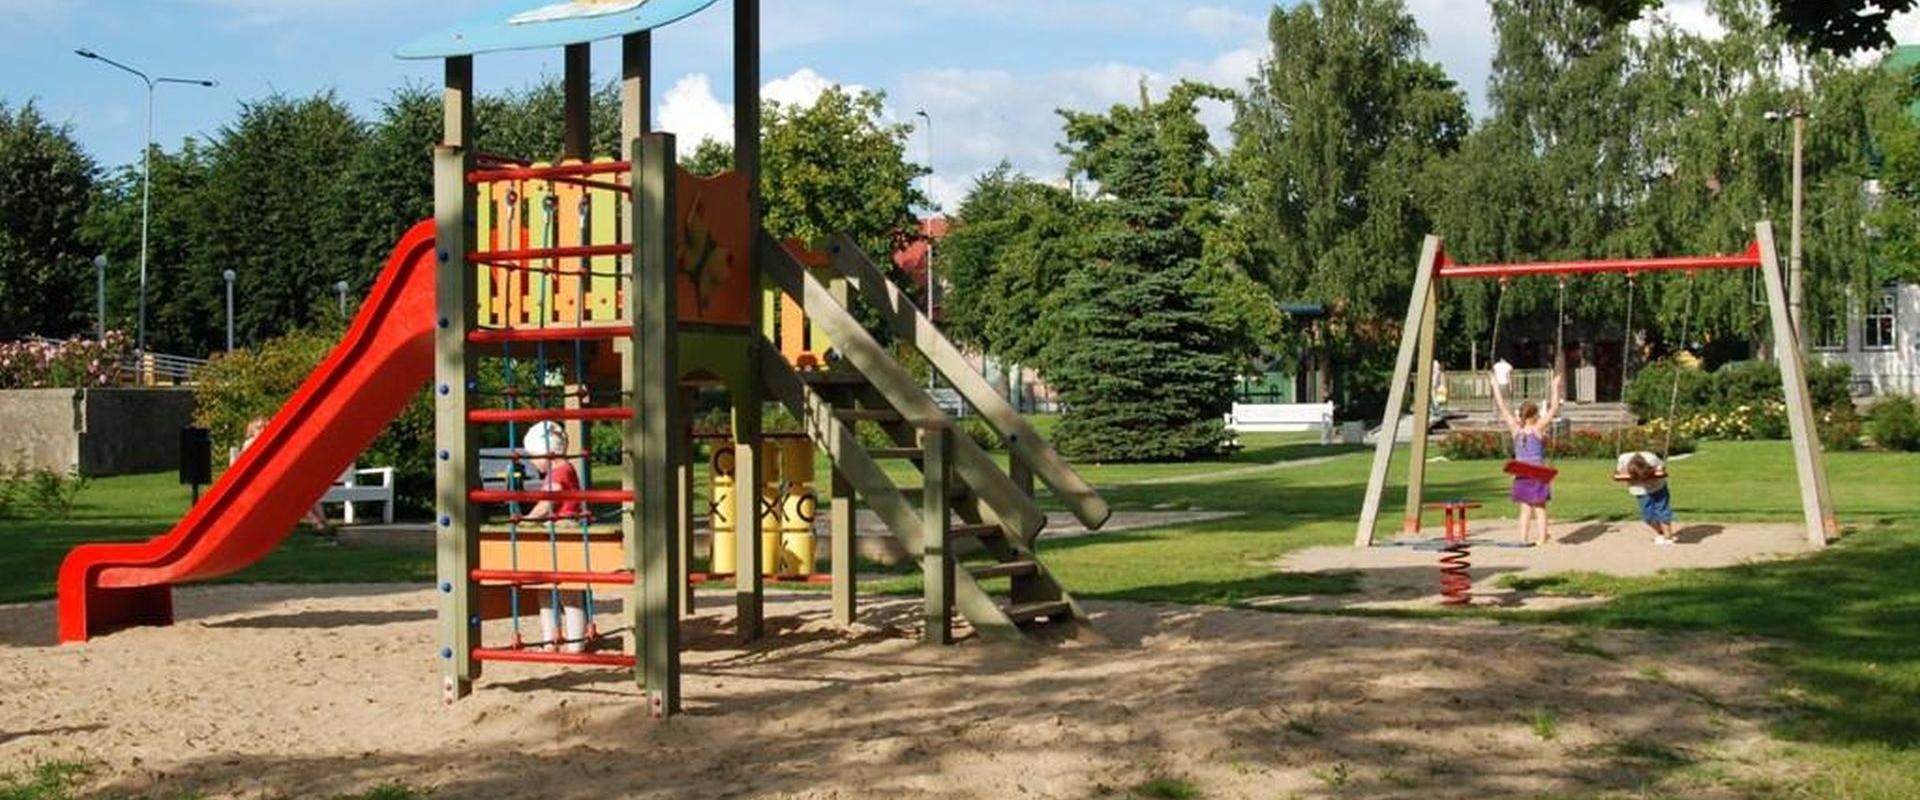 Der Kinderspielpark in der Posti-Straße in Haapsalu